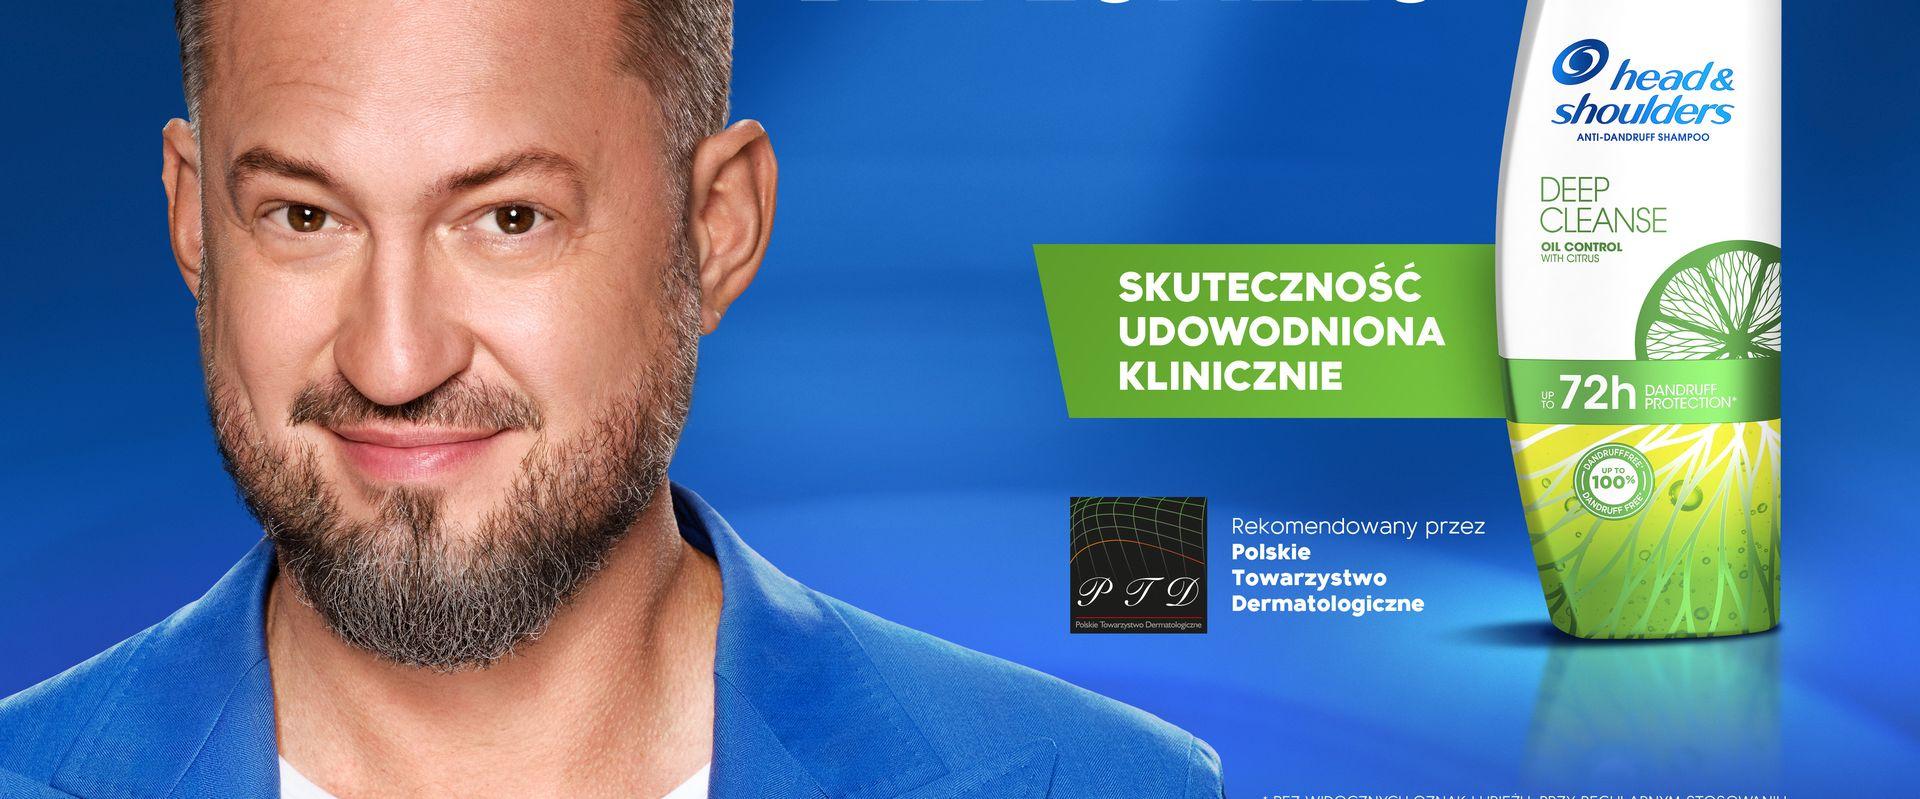 Marcin Prokop w kampanii reklamowej Head&Shoulders